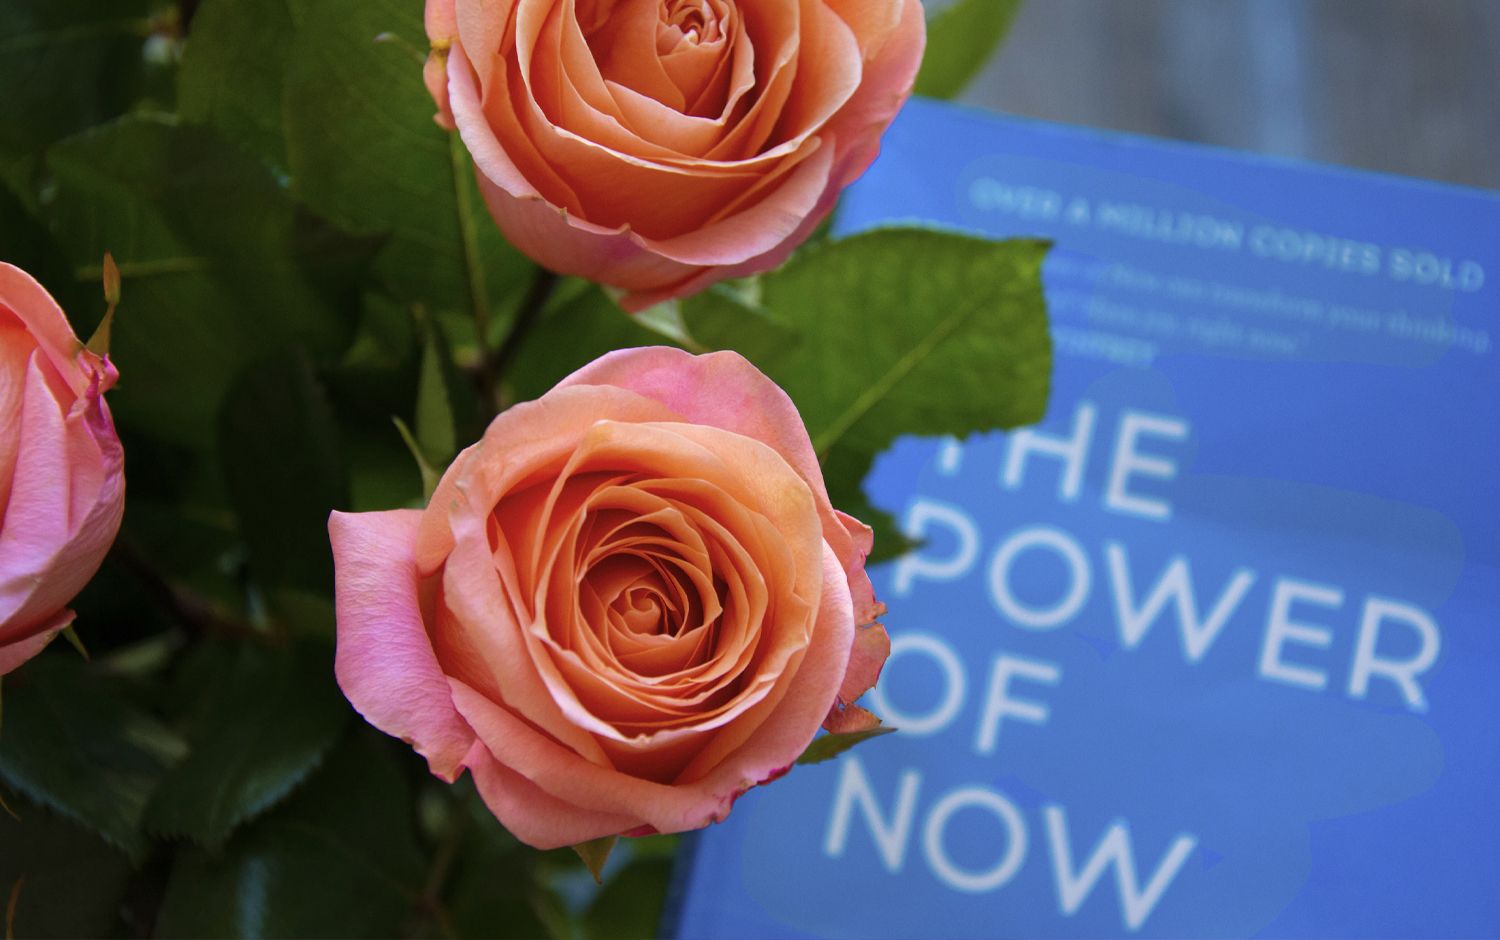 El poder del ahora de Eckhart Tolle libro detrás de las rosas